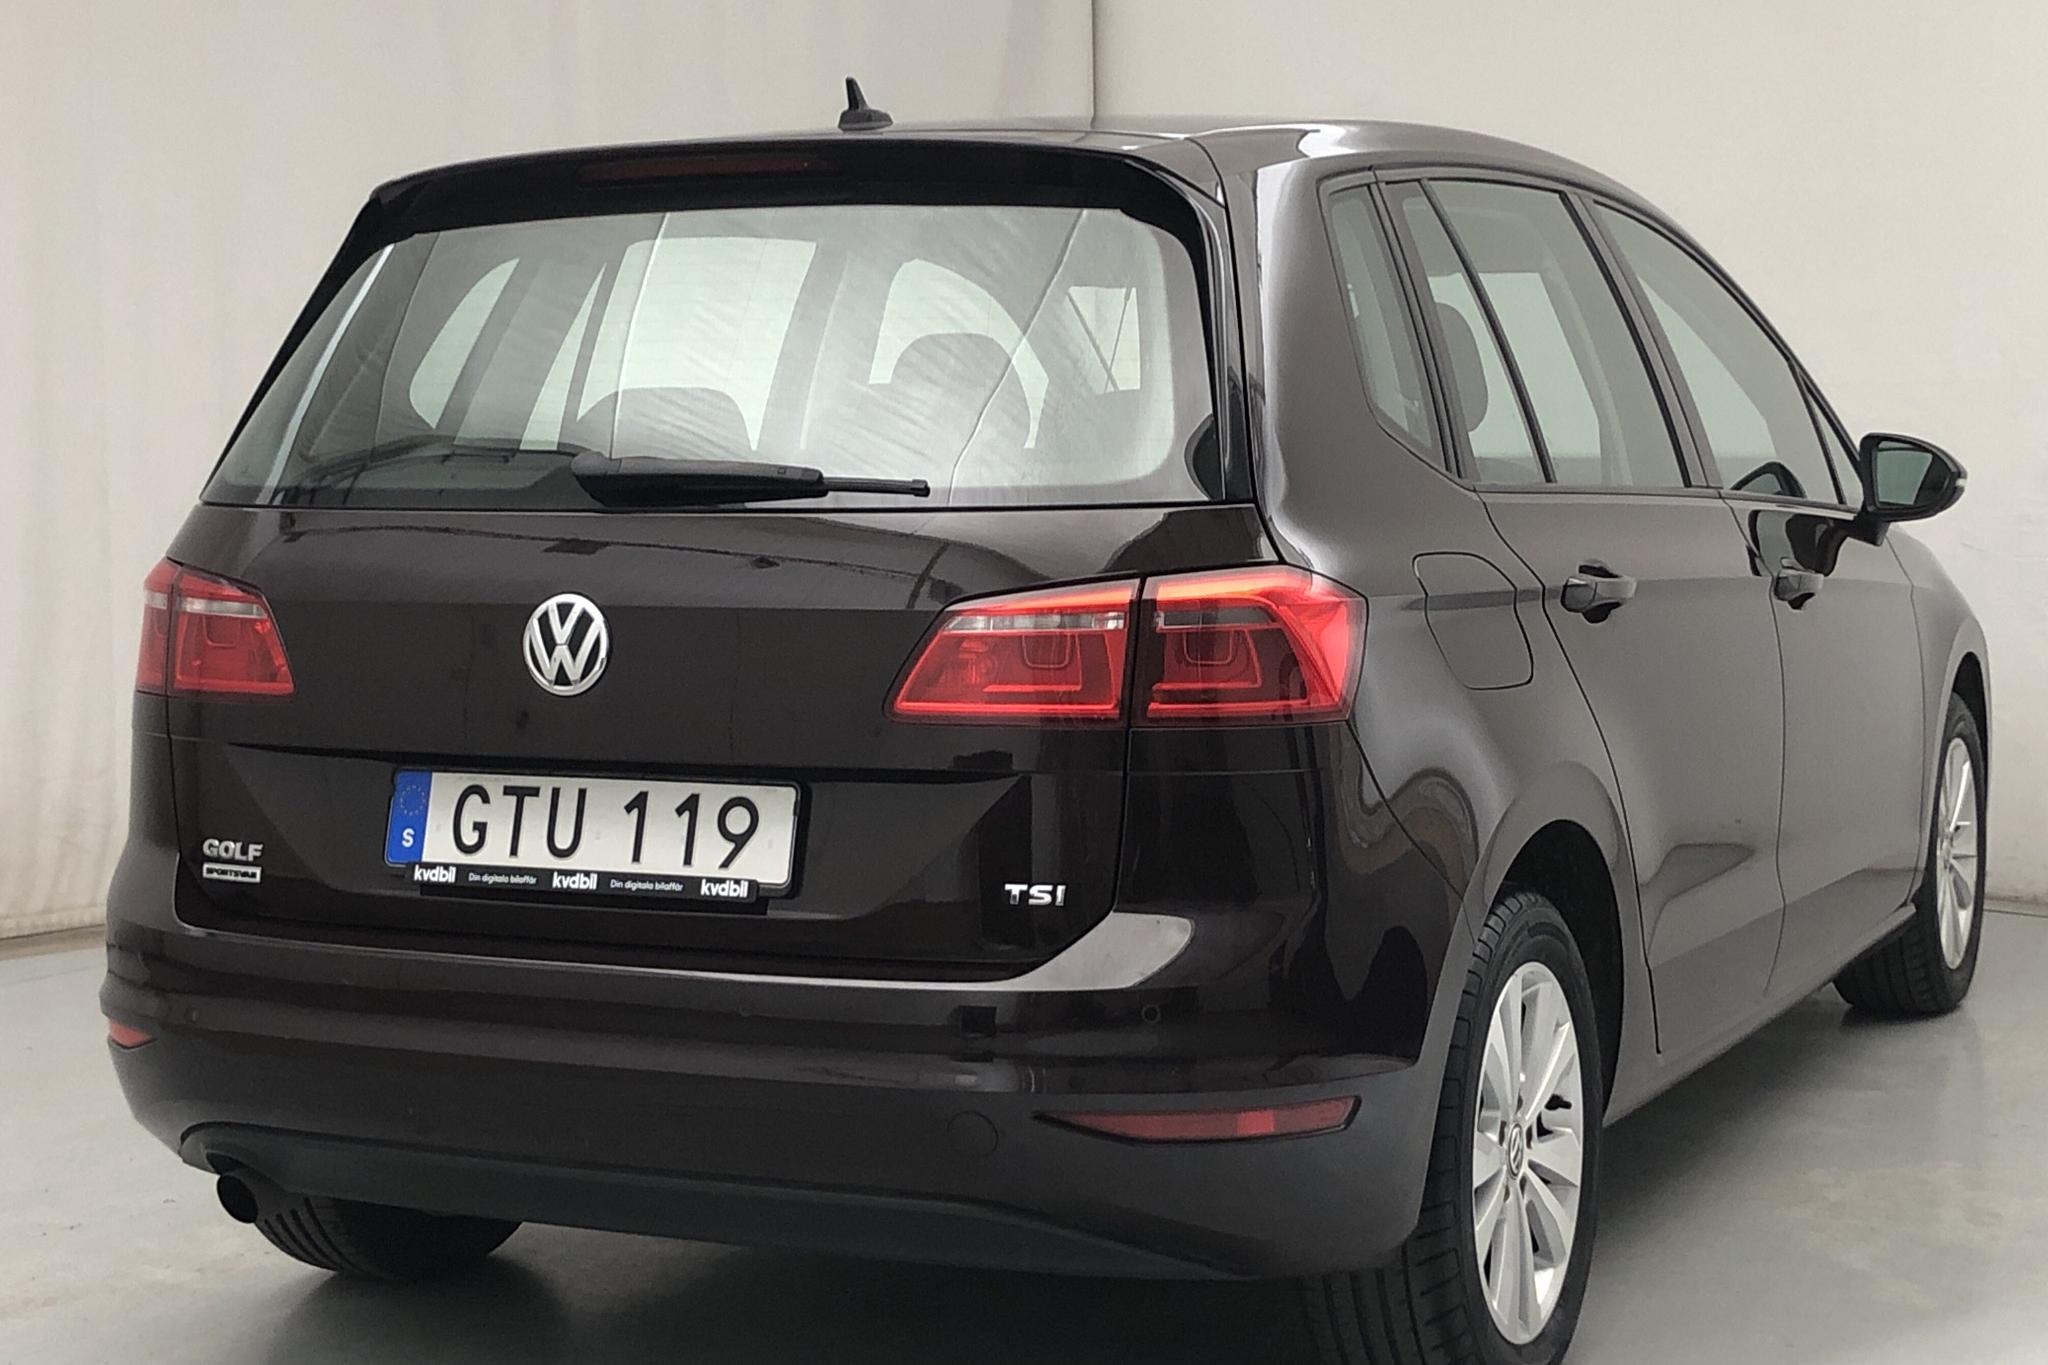 VW Golf VII 1.2 TSI BlueMotion Technology Sportsvan (110hk) - 68 960 km - Manual - Dark Brown - 2018